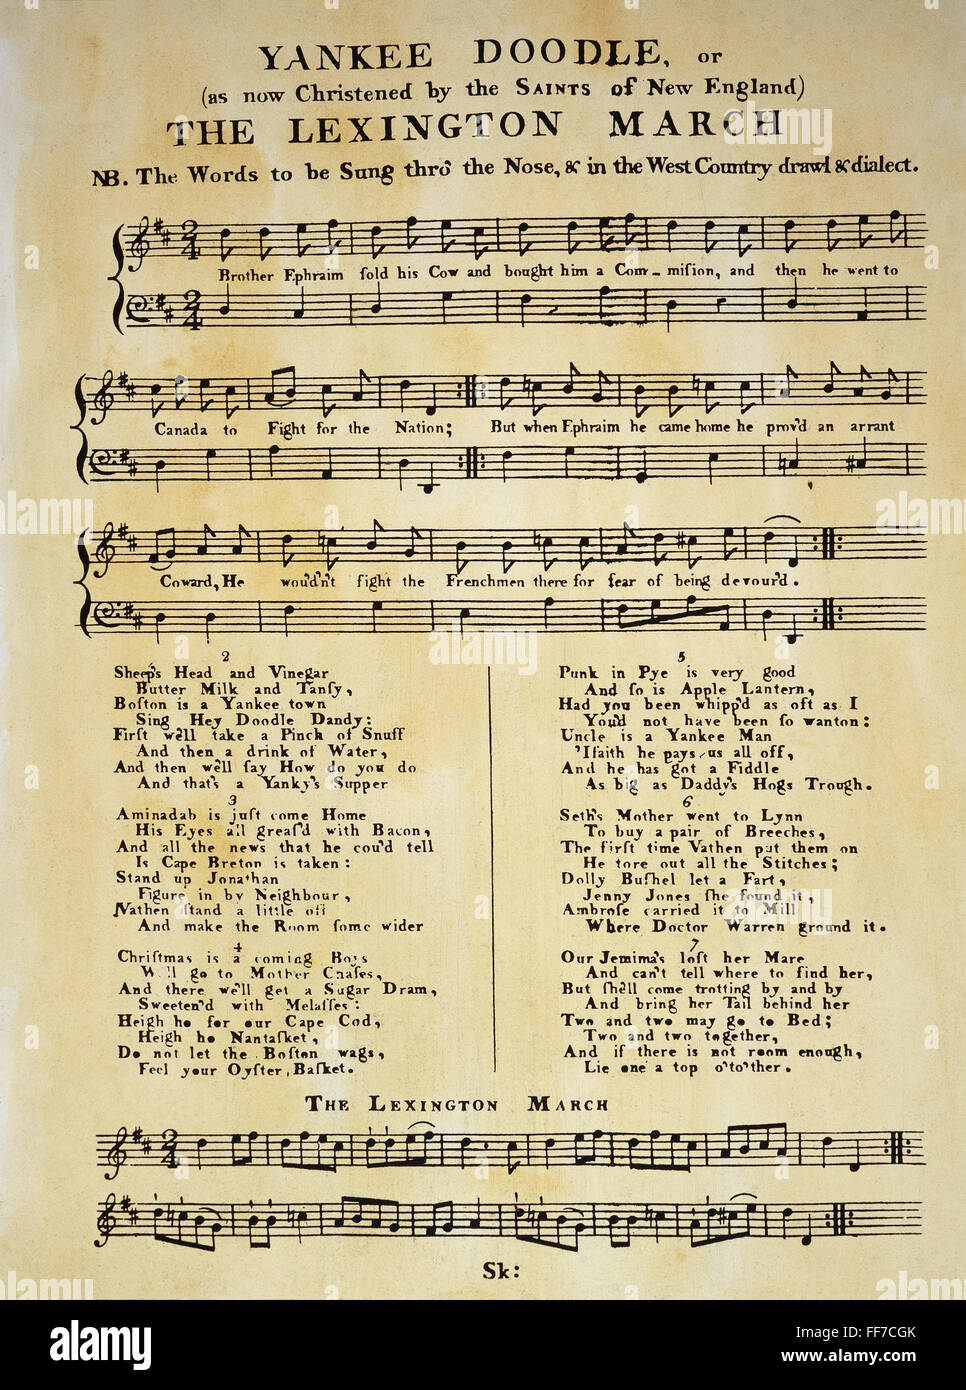 YANKEE DOODLE MUSIC, 1775. /Nla première publication de 'Yankee Doodle' comme Sheet Music, Londres, 1775. Banque D'Images